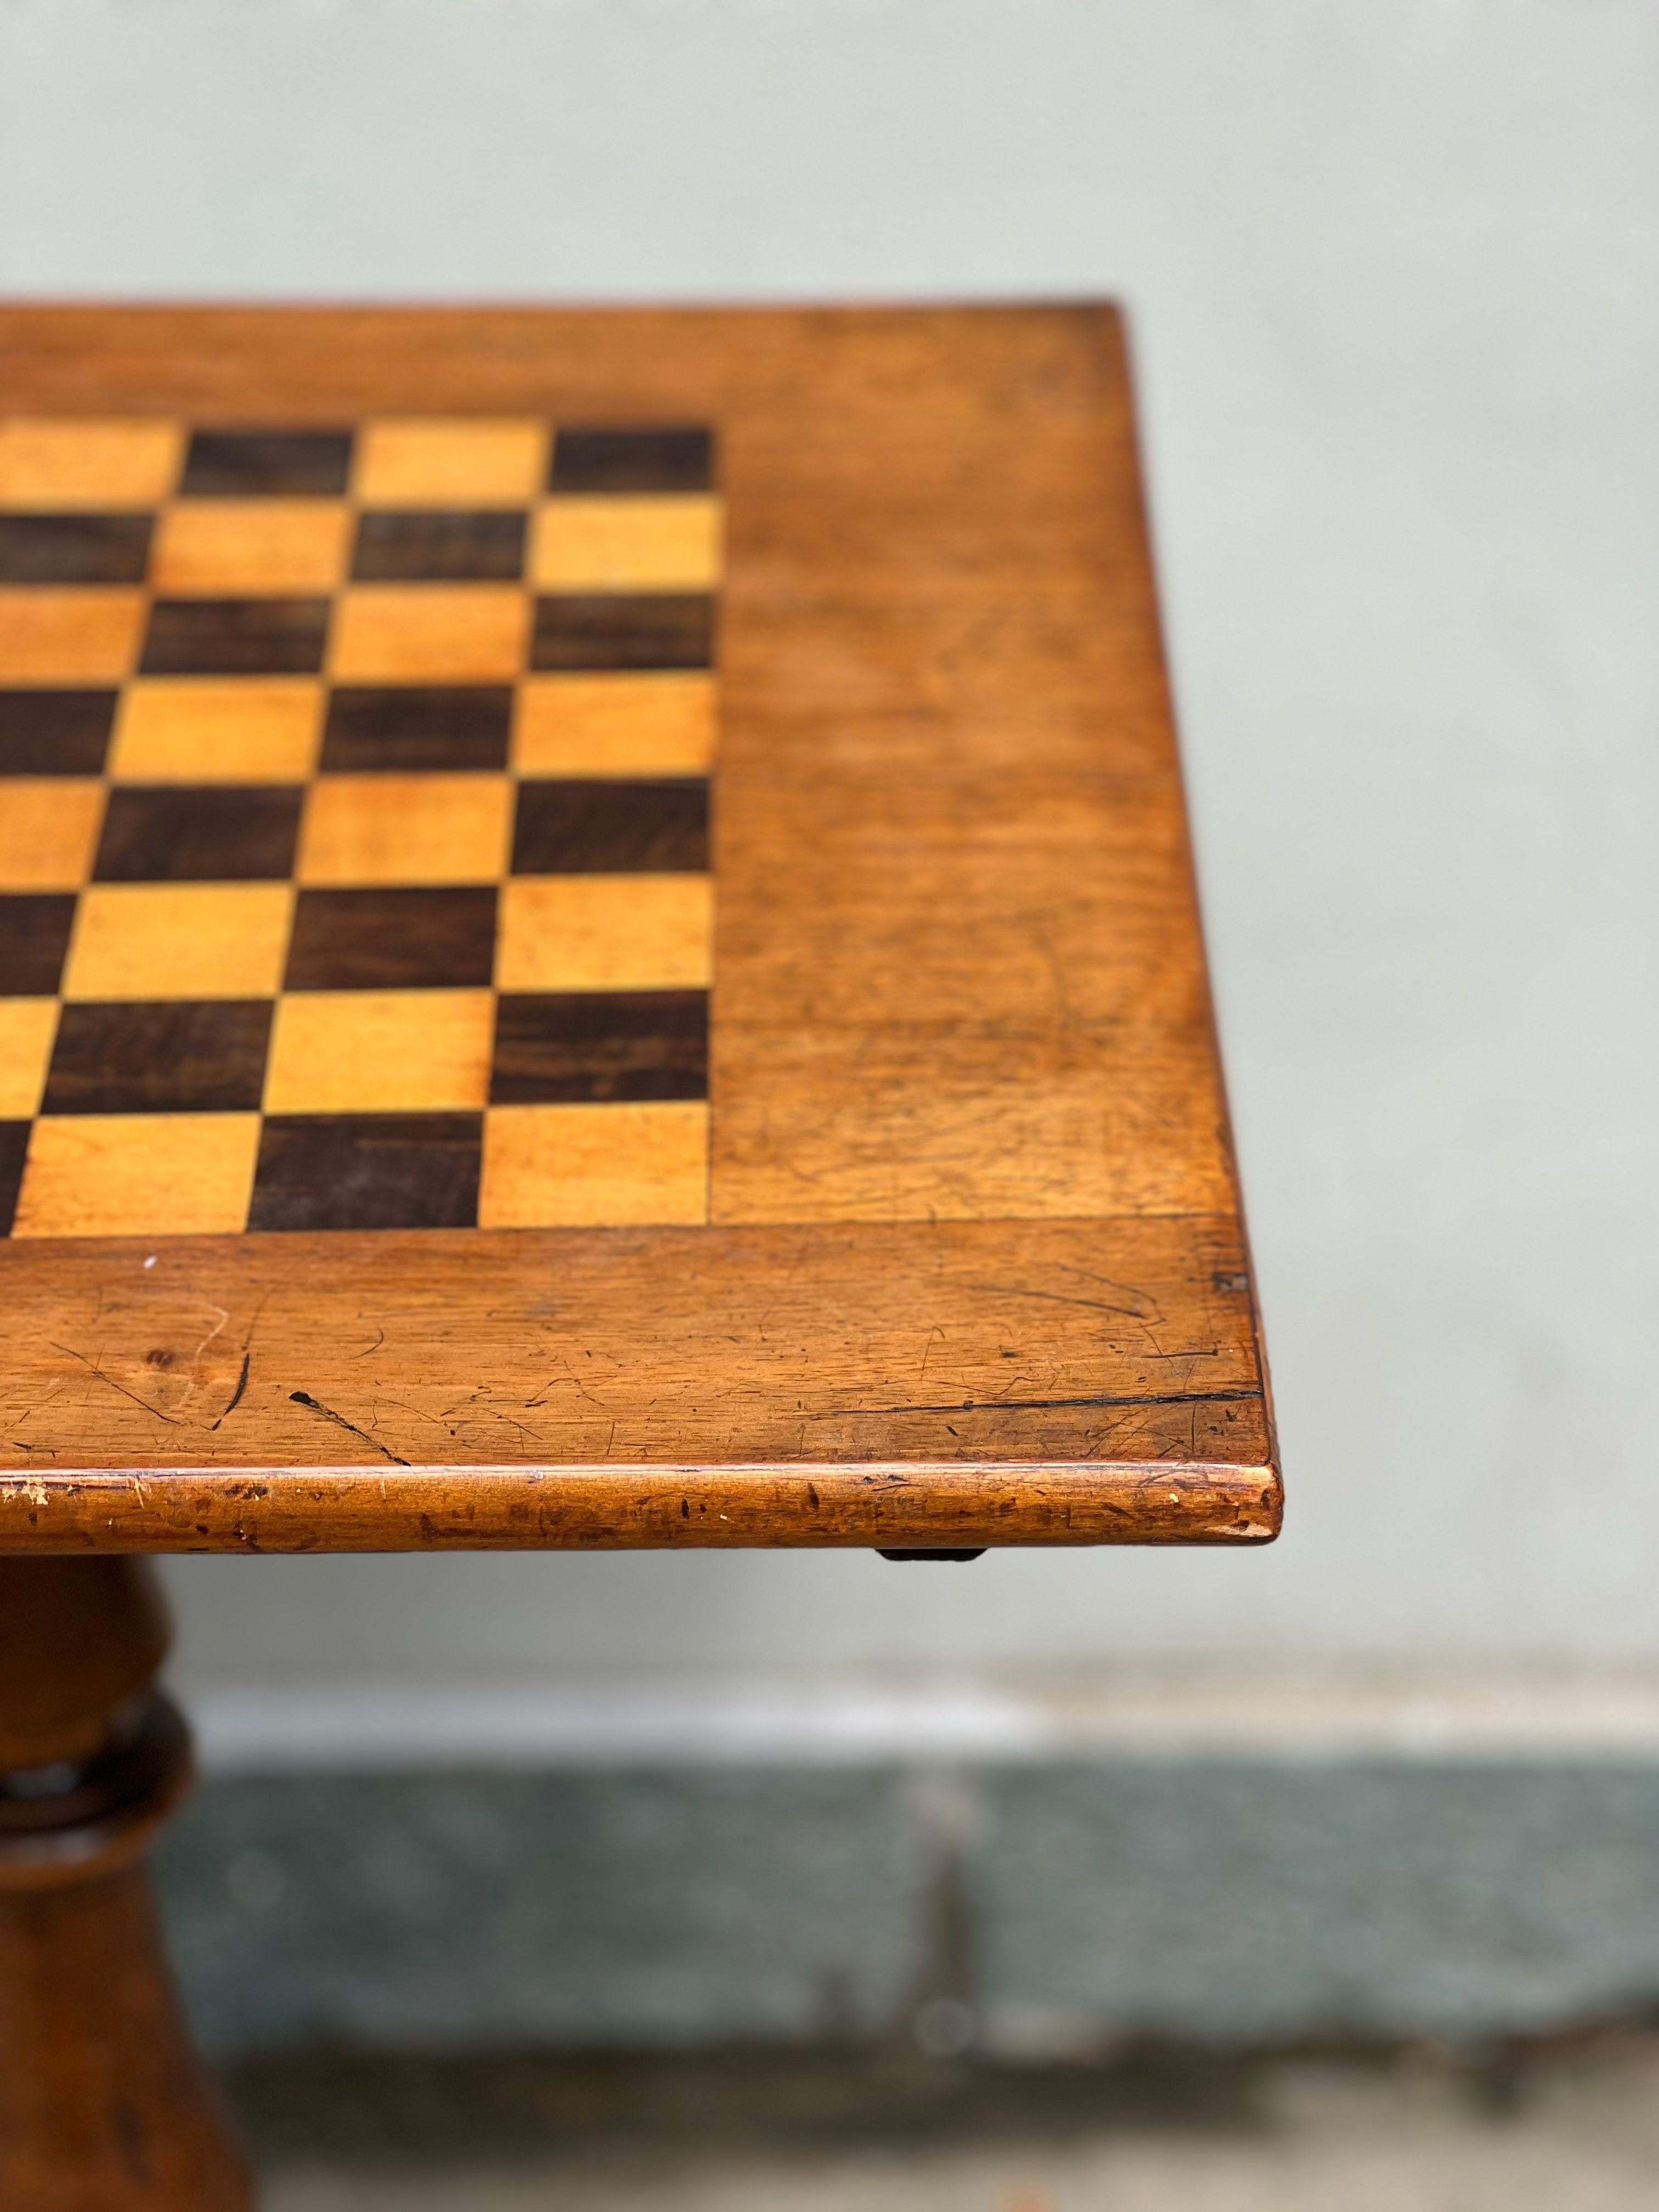 Descrizione : 
tavolino da gioco in legno 

Origini : 
Italia

Periodo di produzione : 
19 secolo 



Condizioni : ottime

Misure (cm) :
Altezza di 78
Larghezza 52.